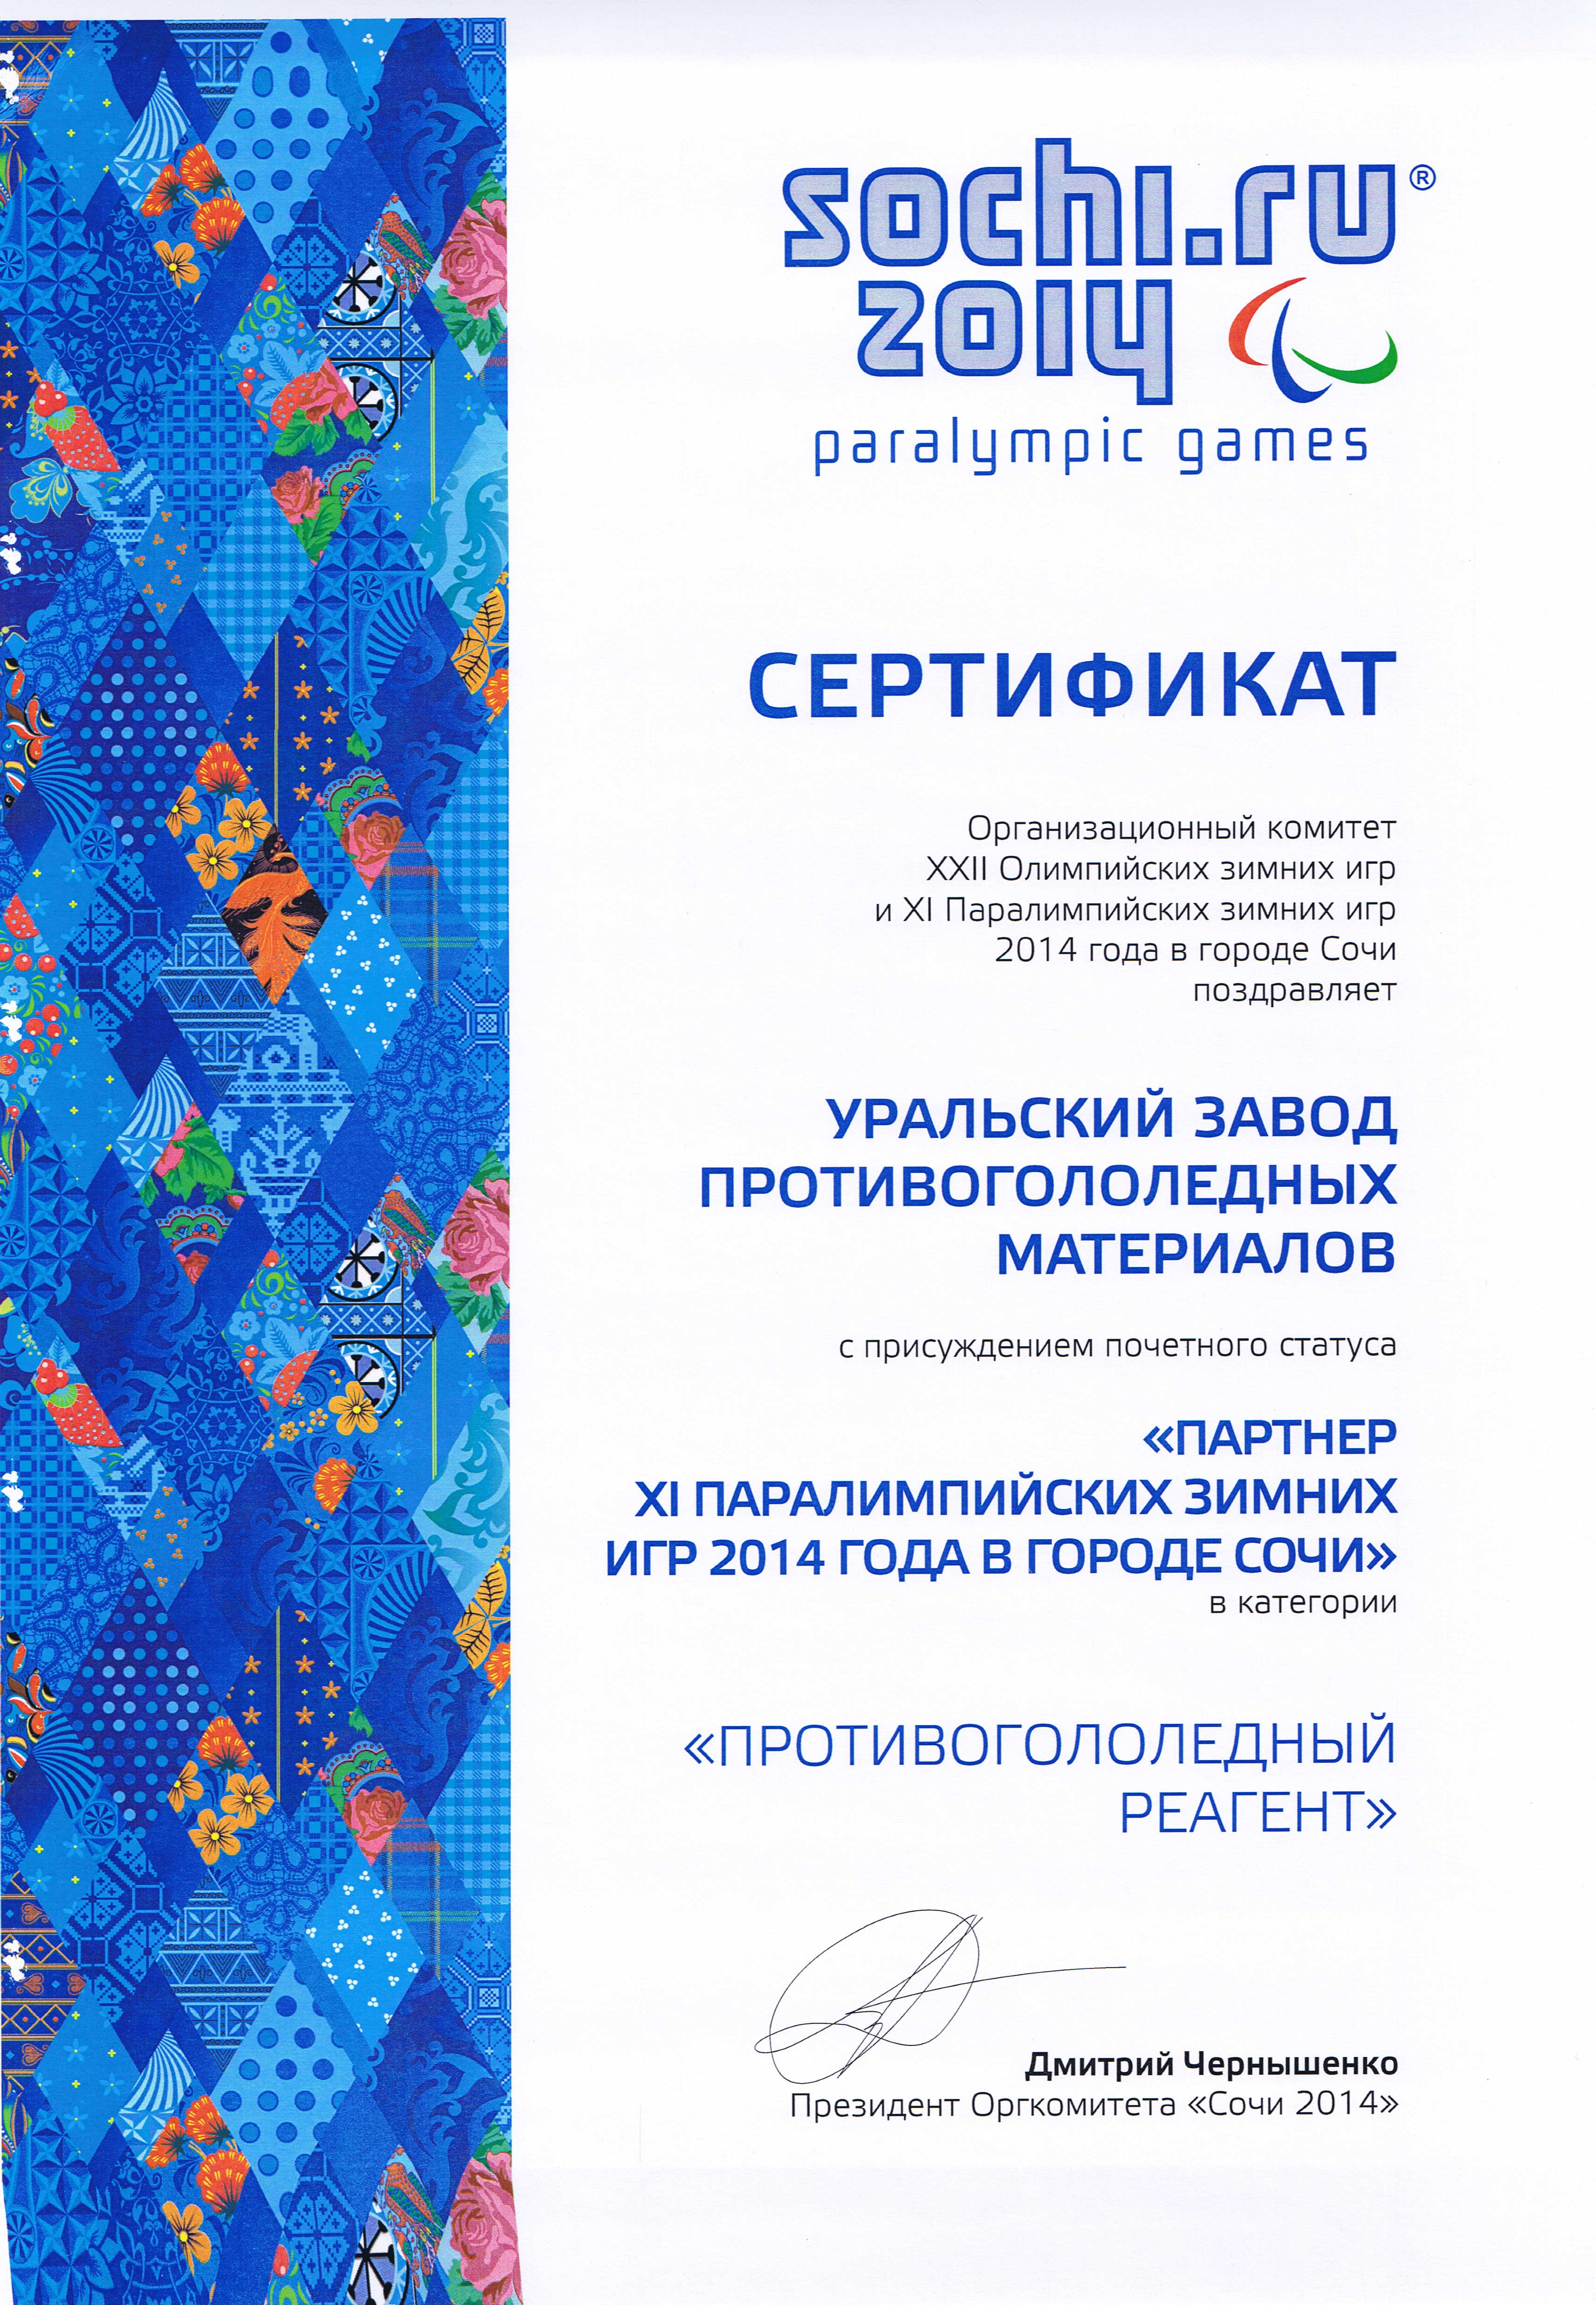 Сертификат подтверждающий статус Уральского завода противогололёдных материалов «Партнёр ХI Паралимпийских зимних игр 2014 года в городе Сочи» в категории «Противогололёдный реагент».